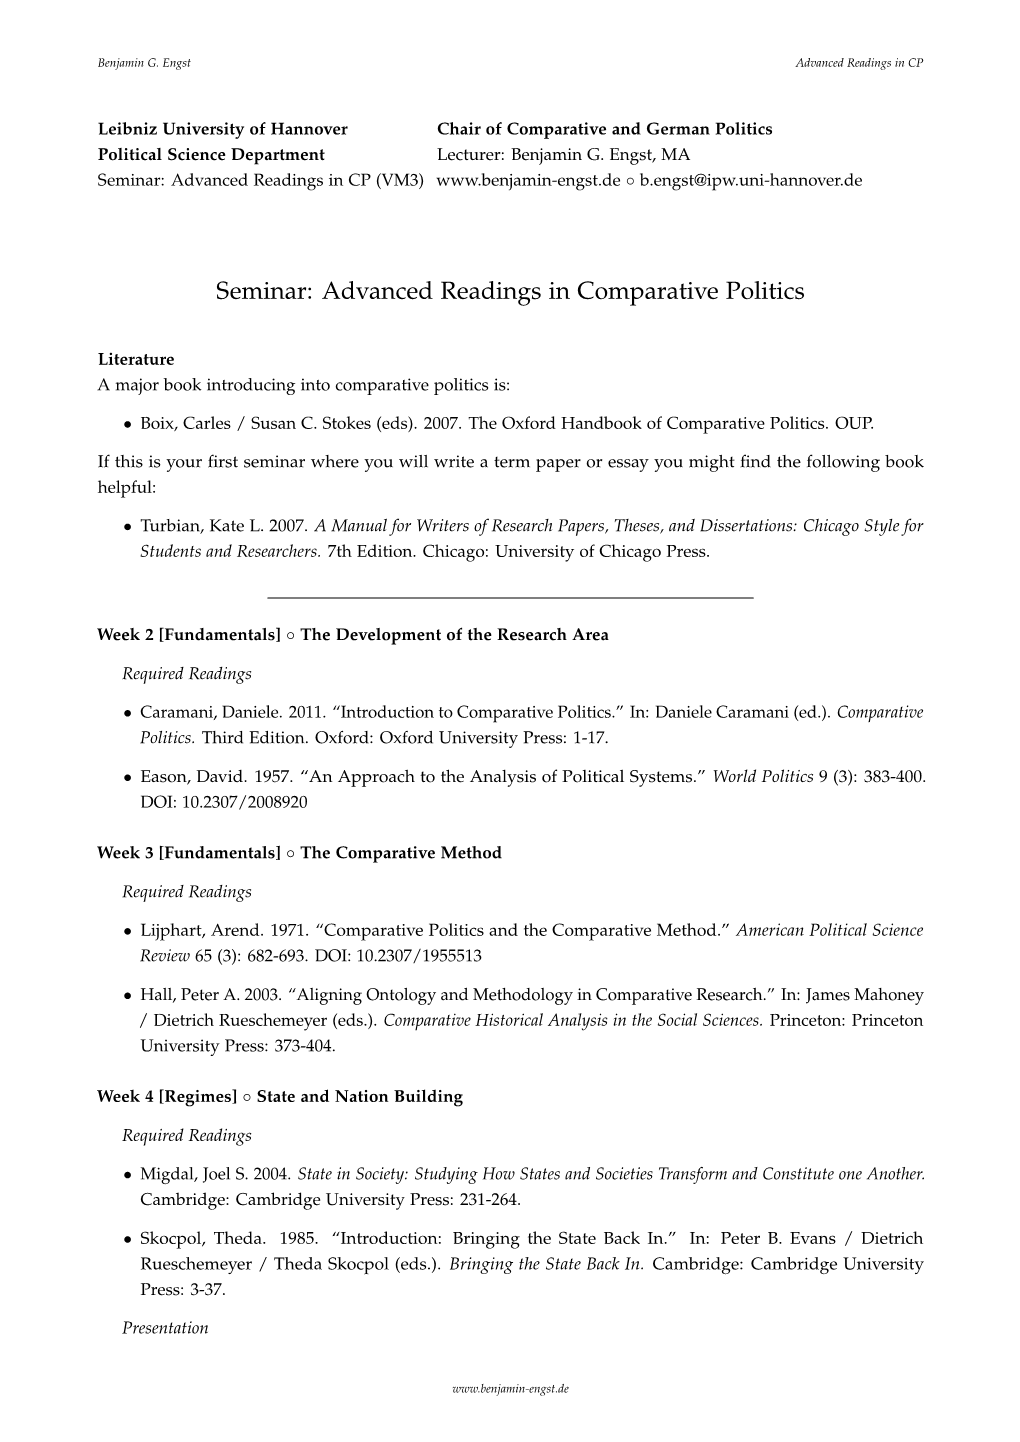 Advanced Readings in Comparative Politics